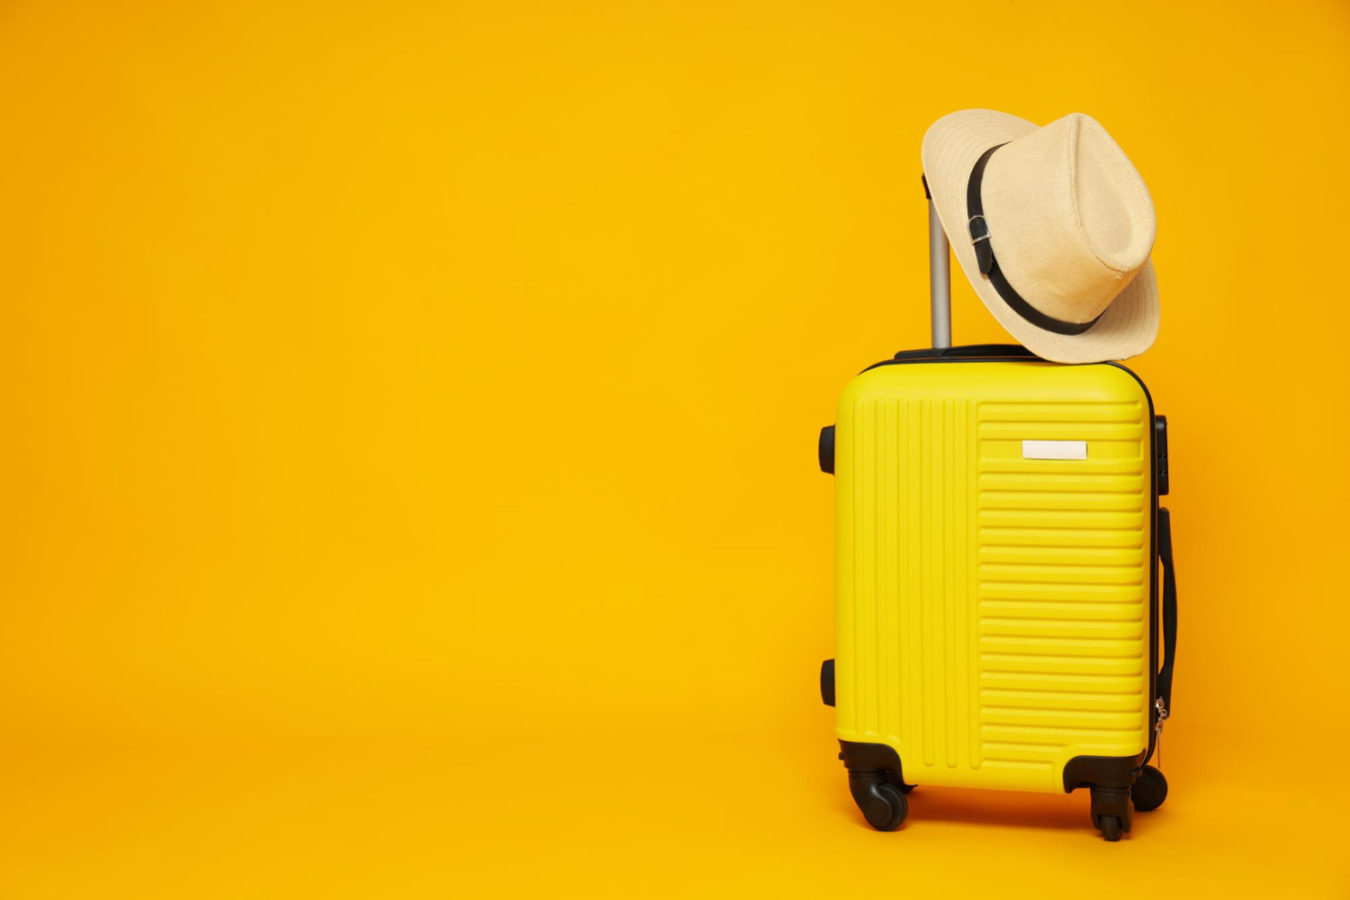 imagem mostra uma mala amarela e um chapéu, ilustrando feriados nacionais